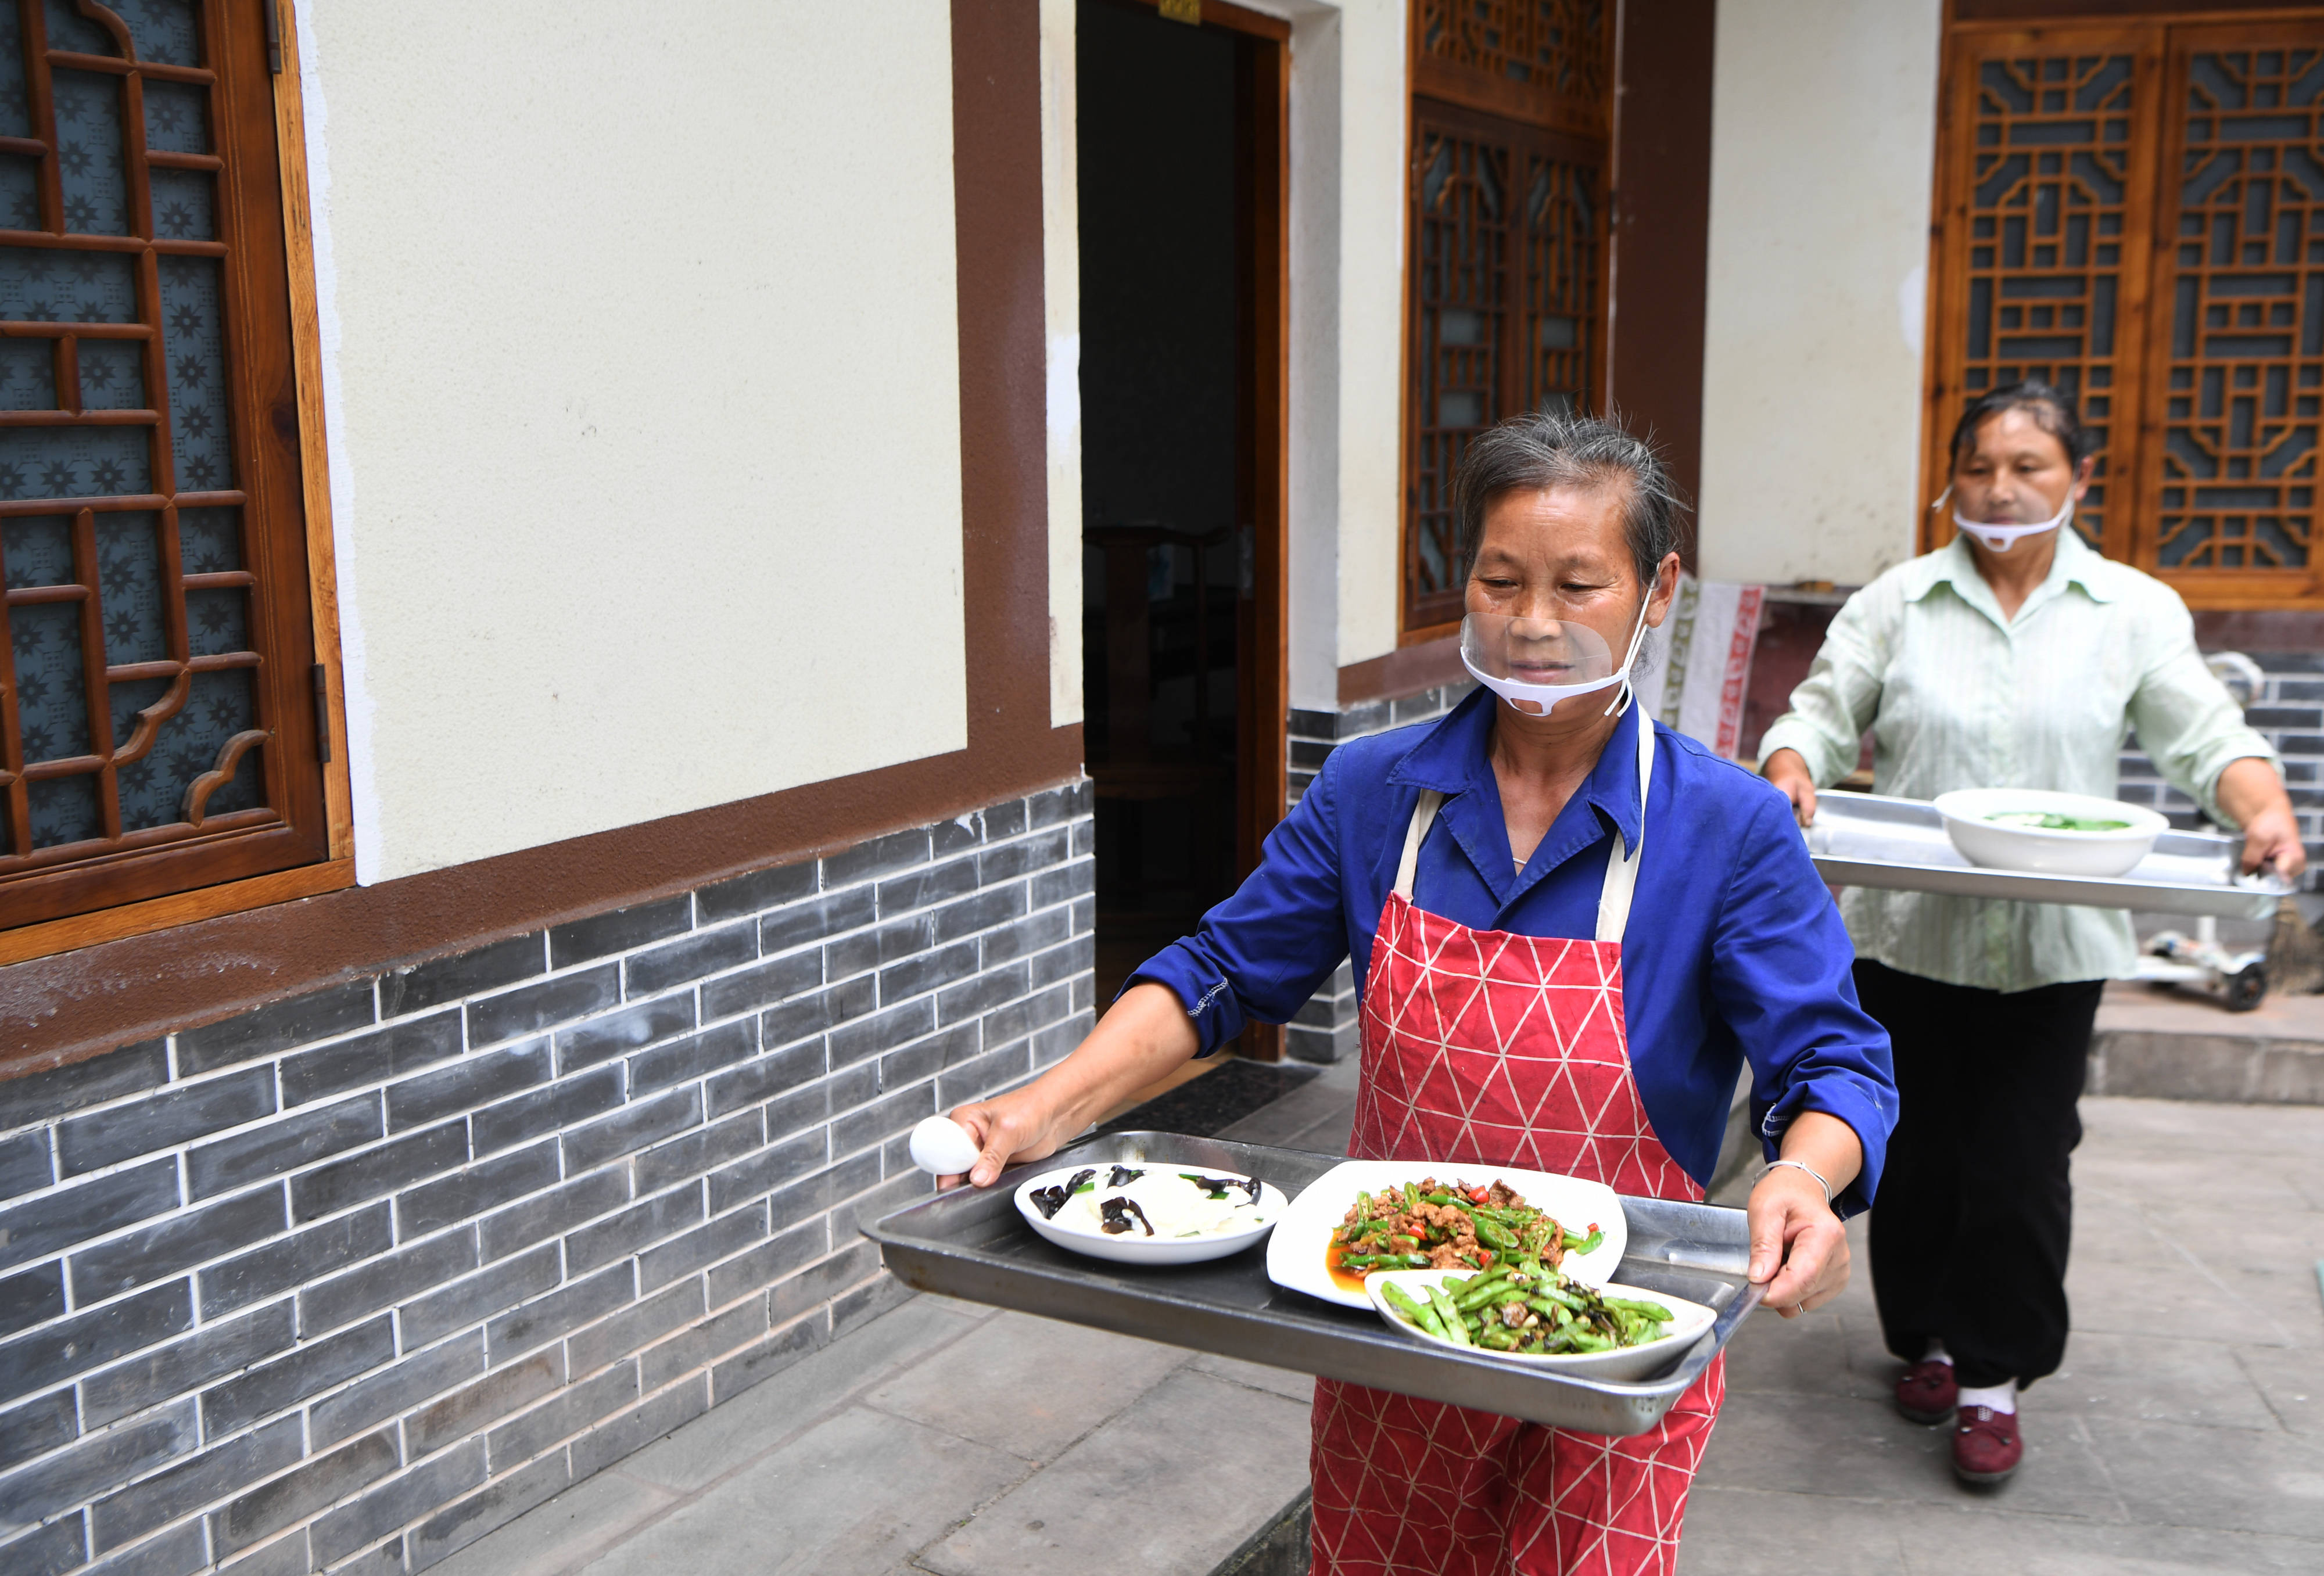 6月4日,万州区长岭镇安溪村一农家乐的工作人员在上菜